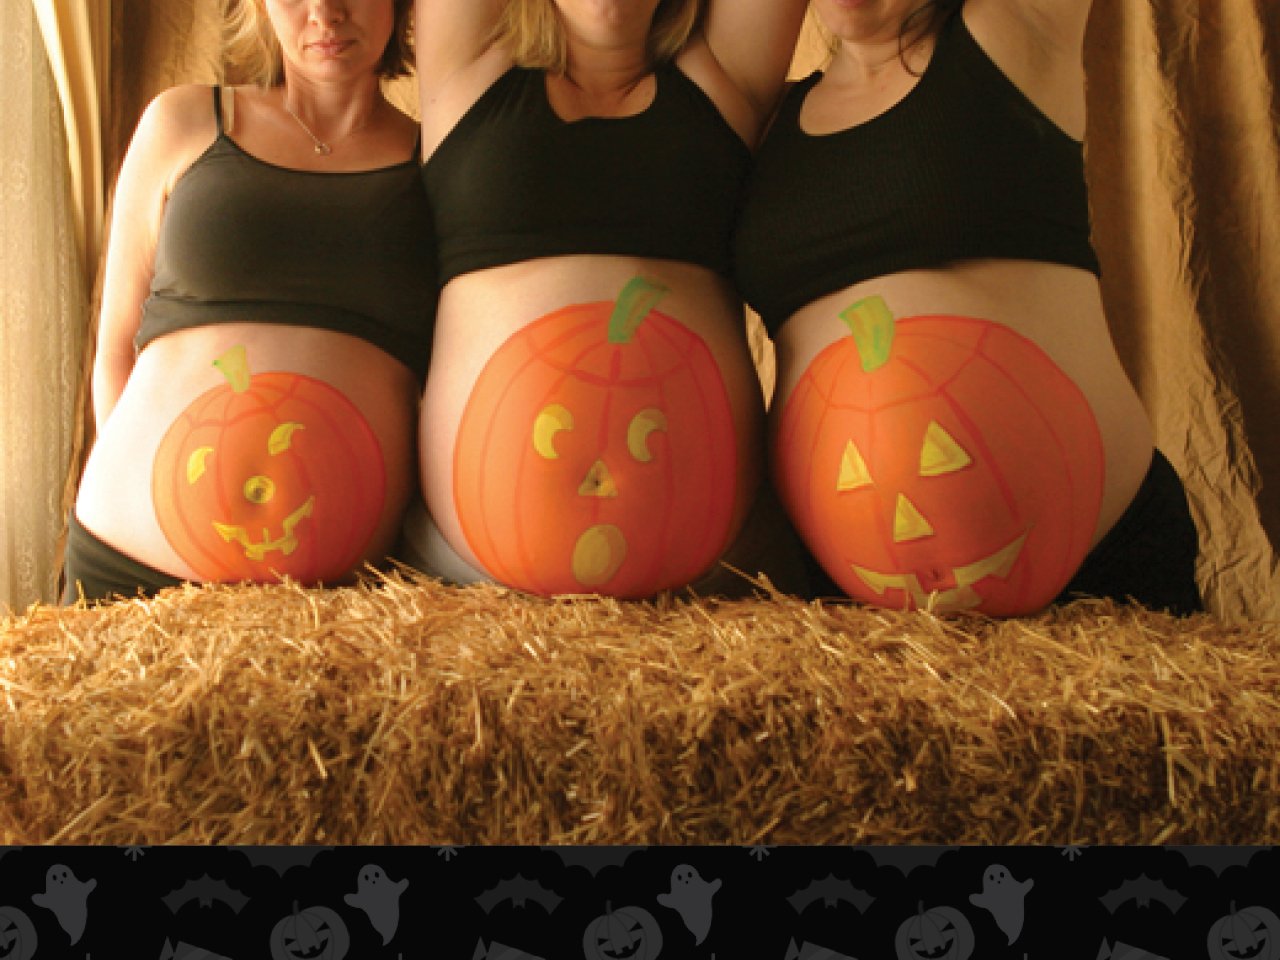 Tres mujeres con calabazas pintadas en su vientre de embarazada.